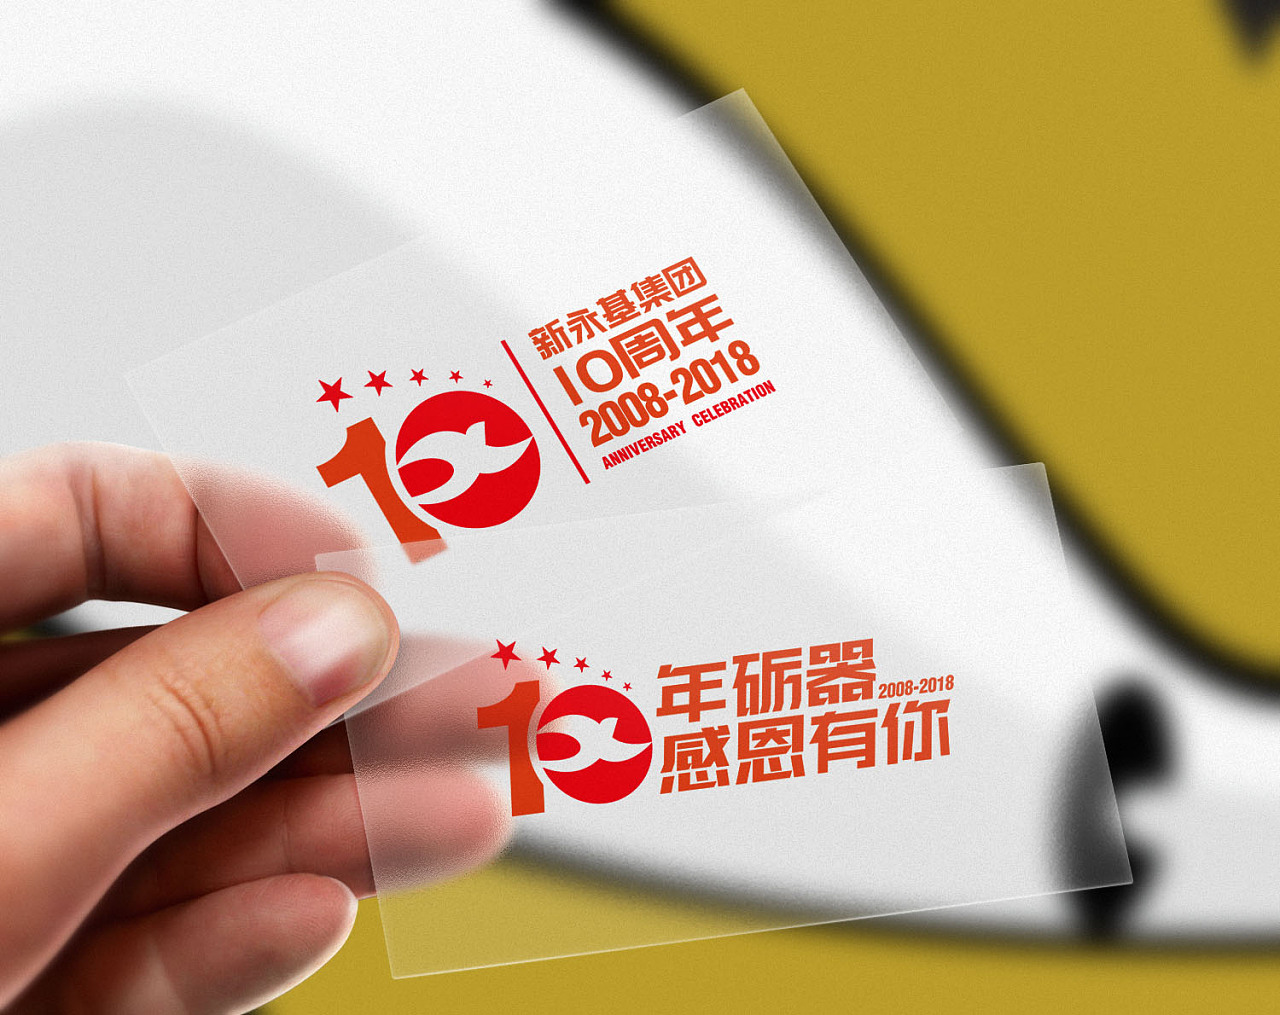 新永基集团10周年庆logo及海报背景设计 